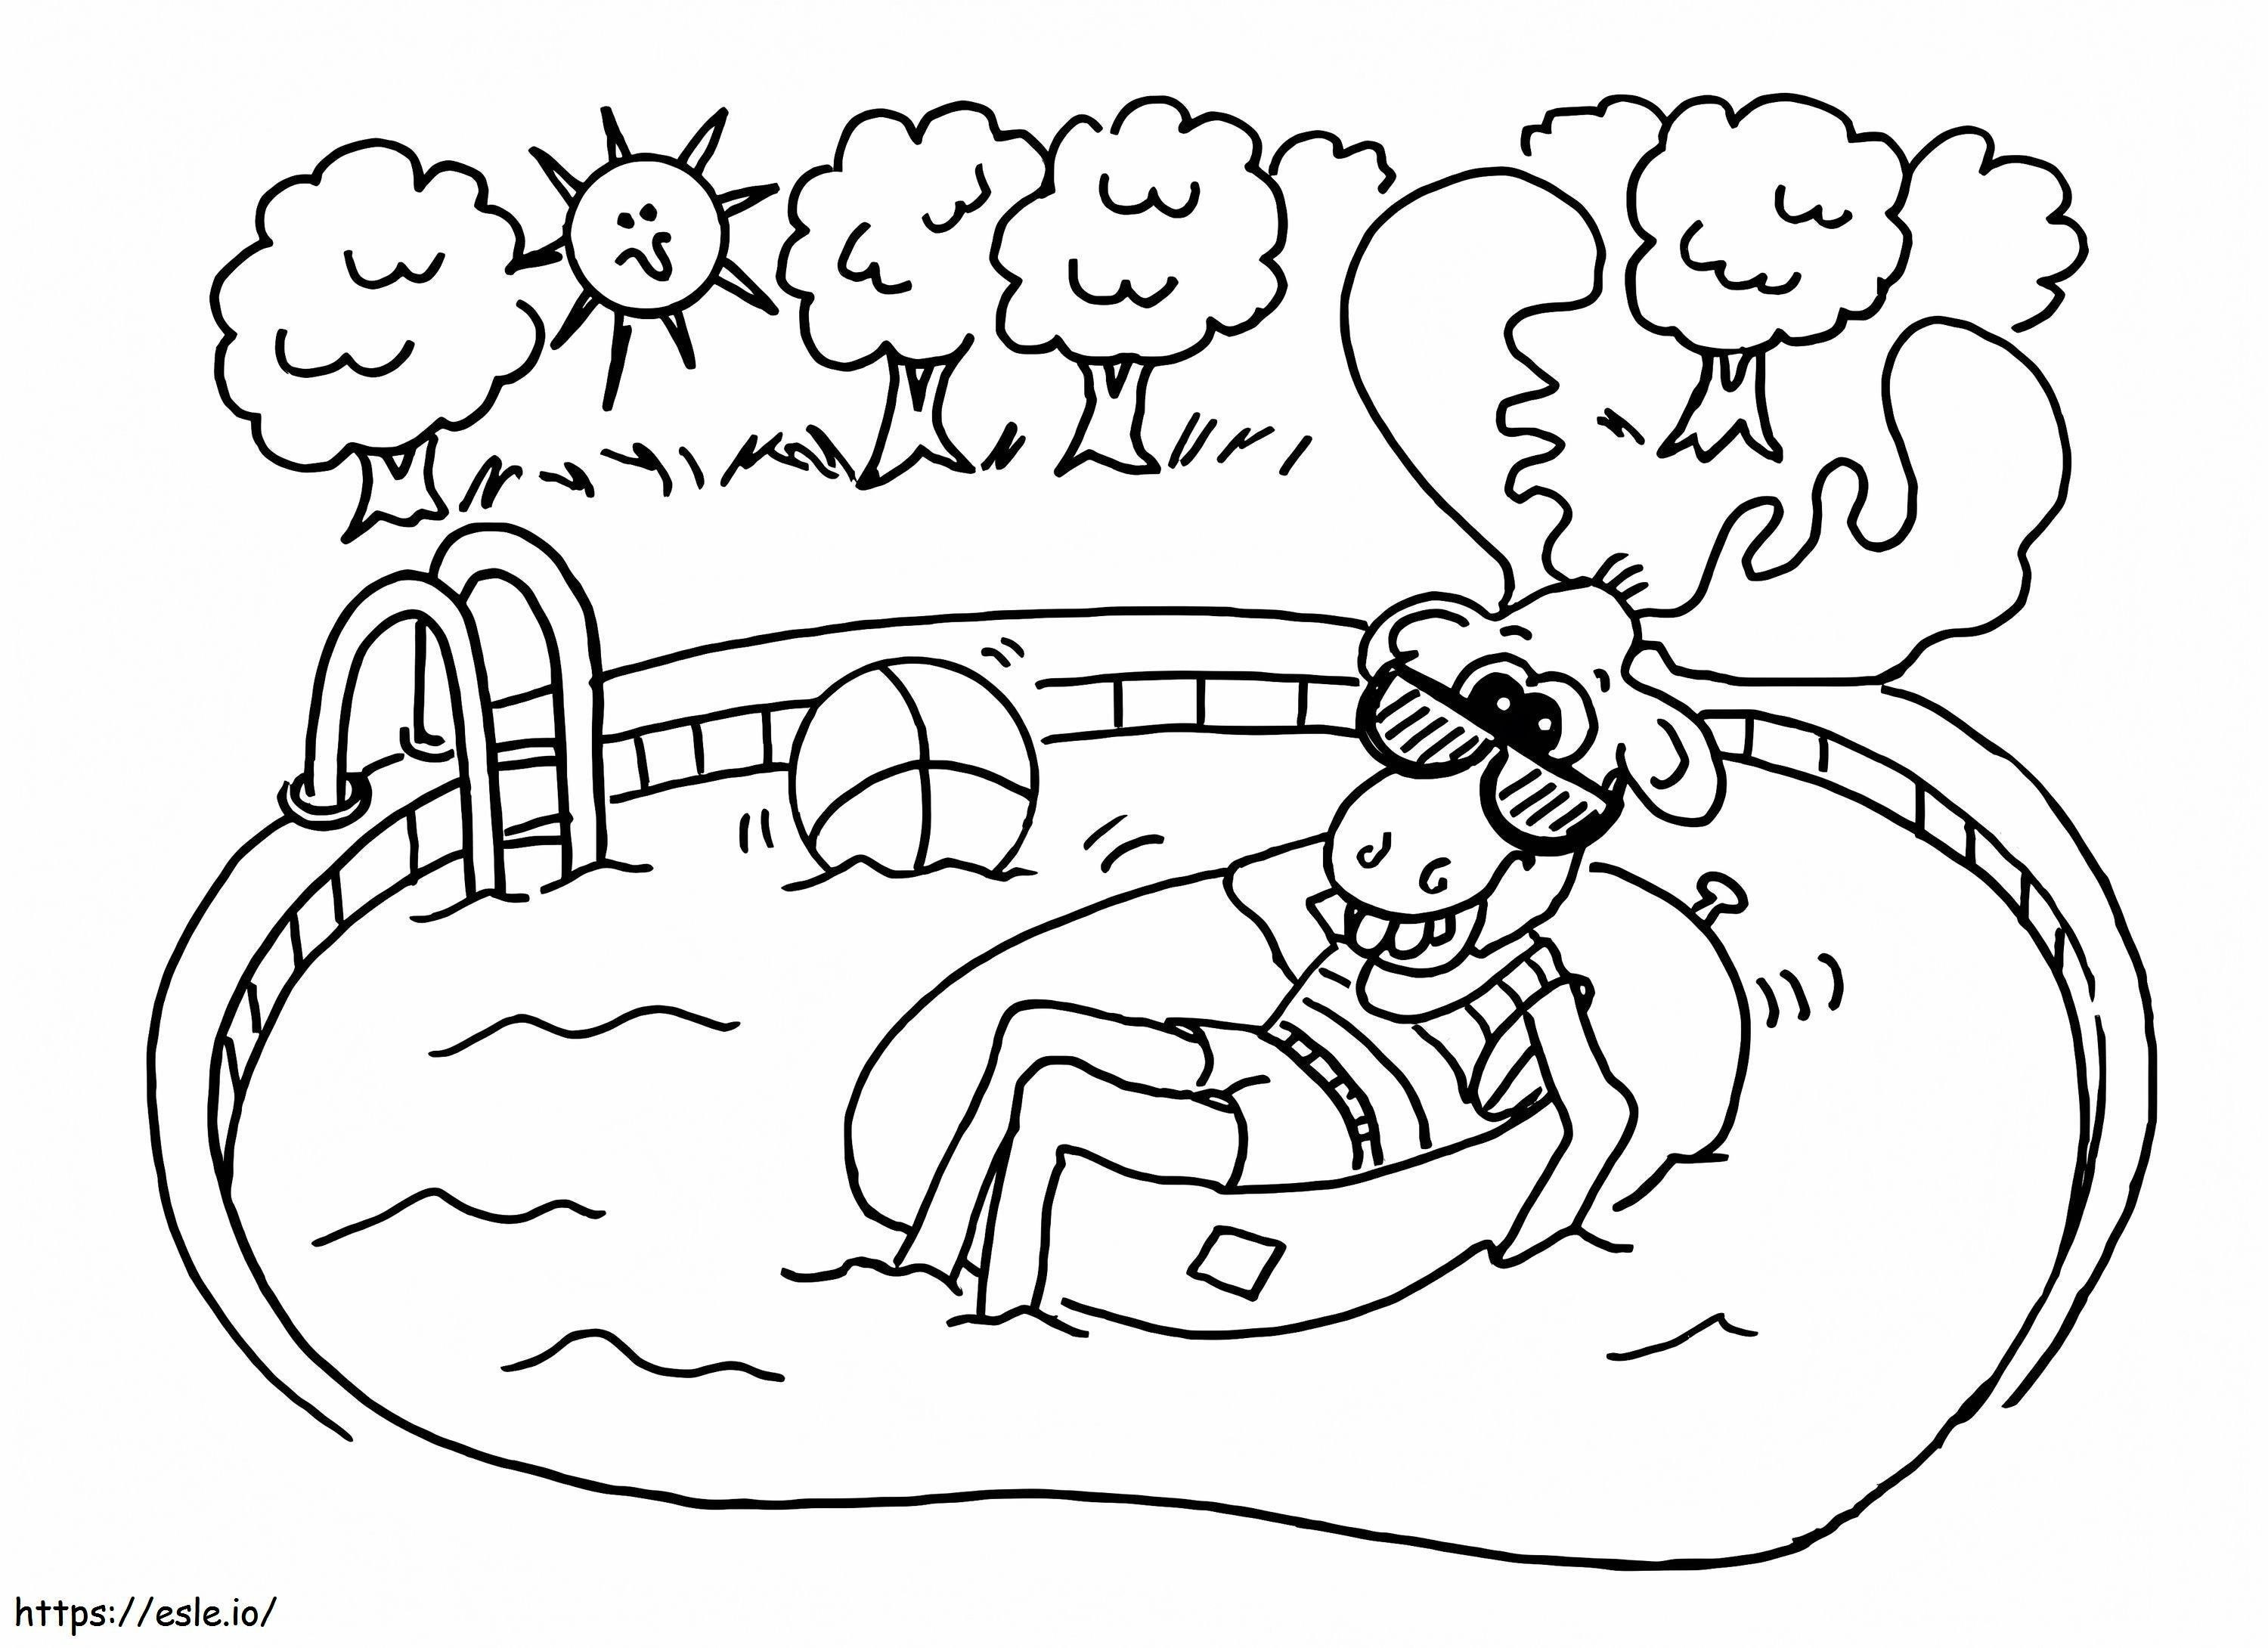 Hirsch im Schwimmbad ausmalbilder